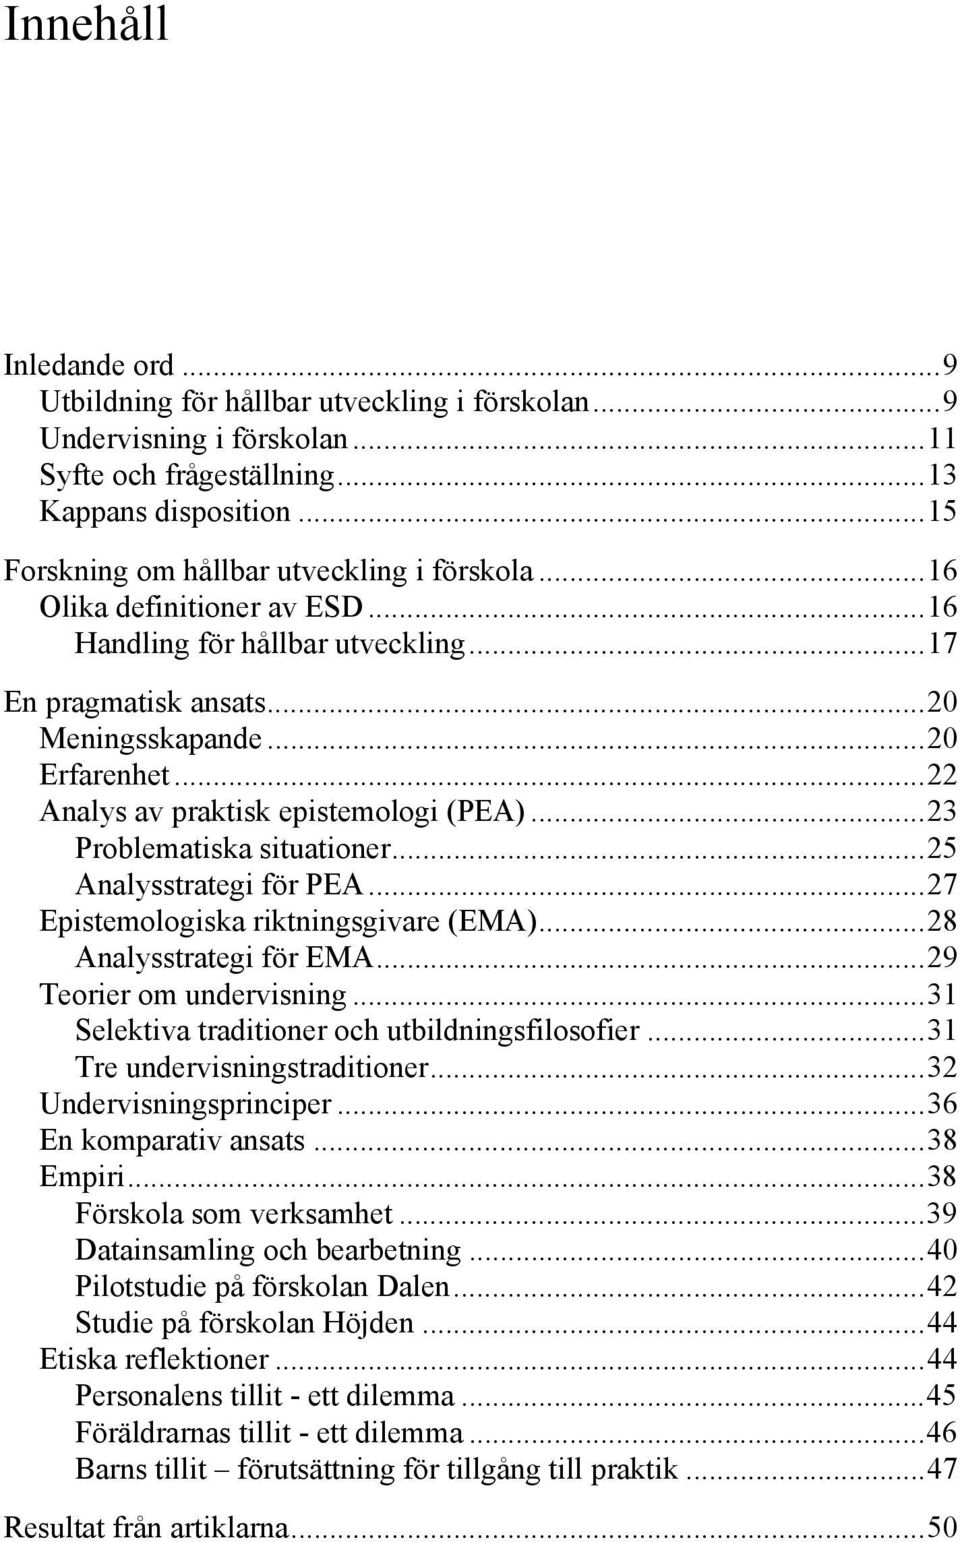 .. 22 Analys av praktisk epistemologi (PEA)... 23 Problematiska situationer... 25 Analysstrategi för PEA... 27 Epistemologiska riktningsgivare (EMA)... 28 Analysstrategi för EMA.